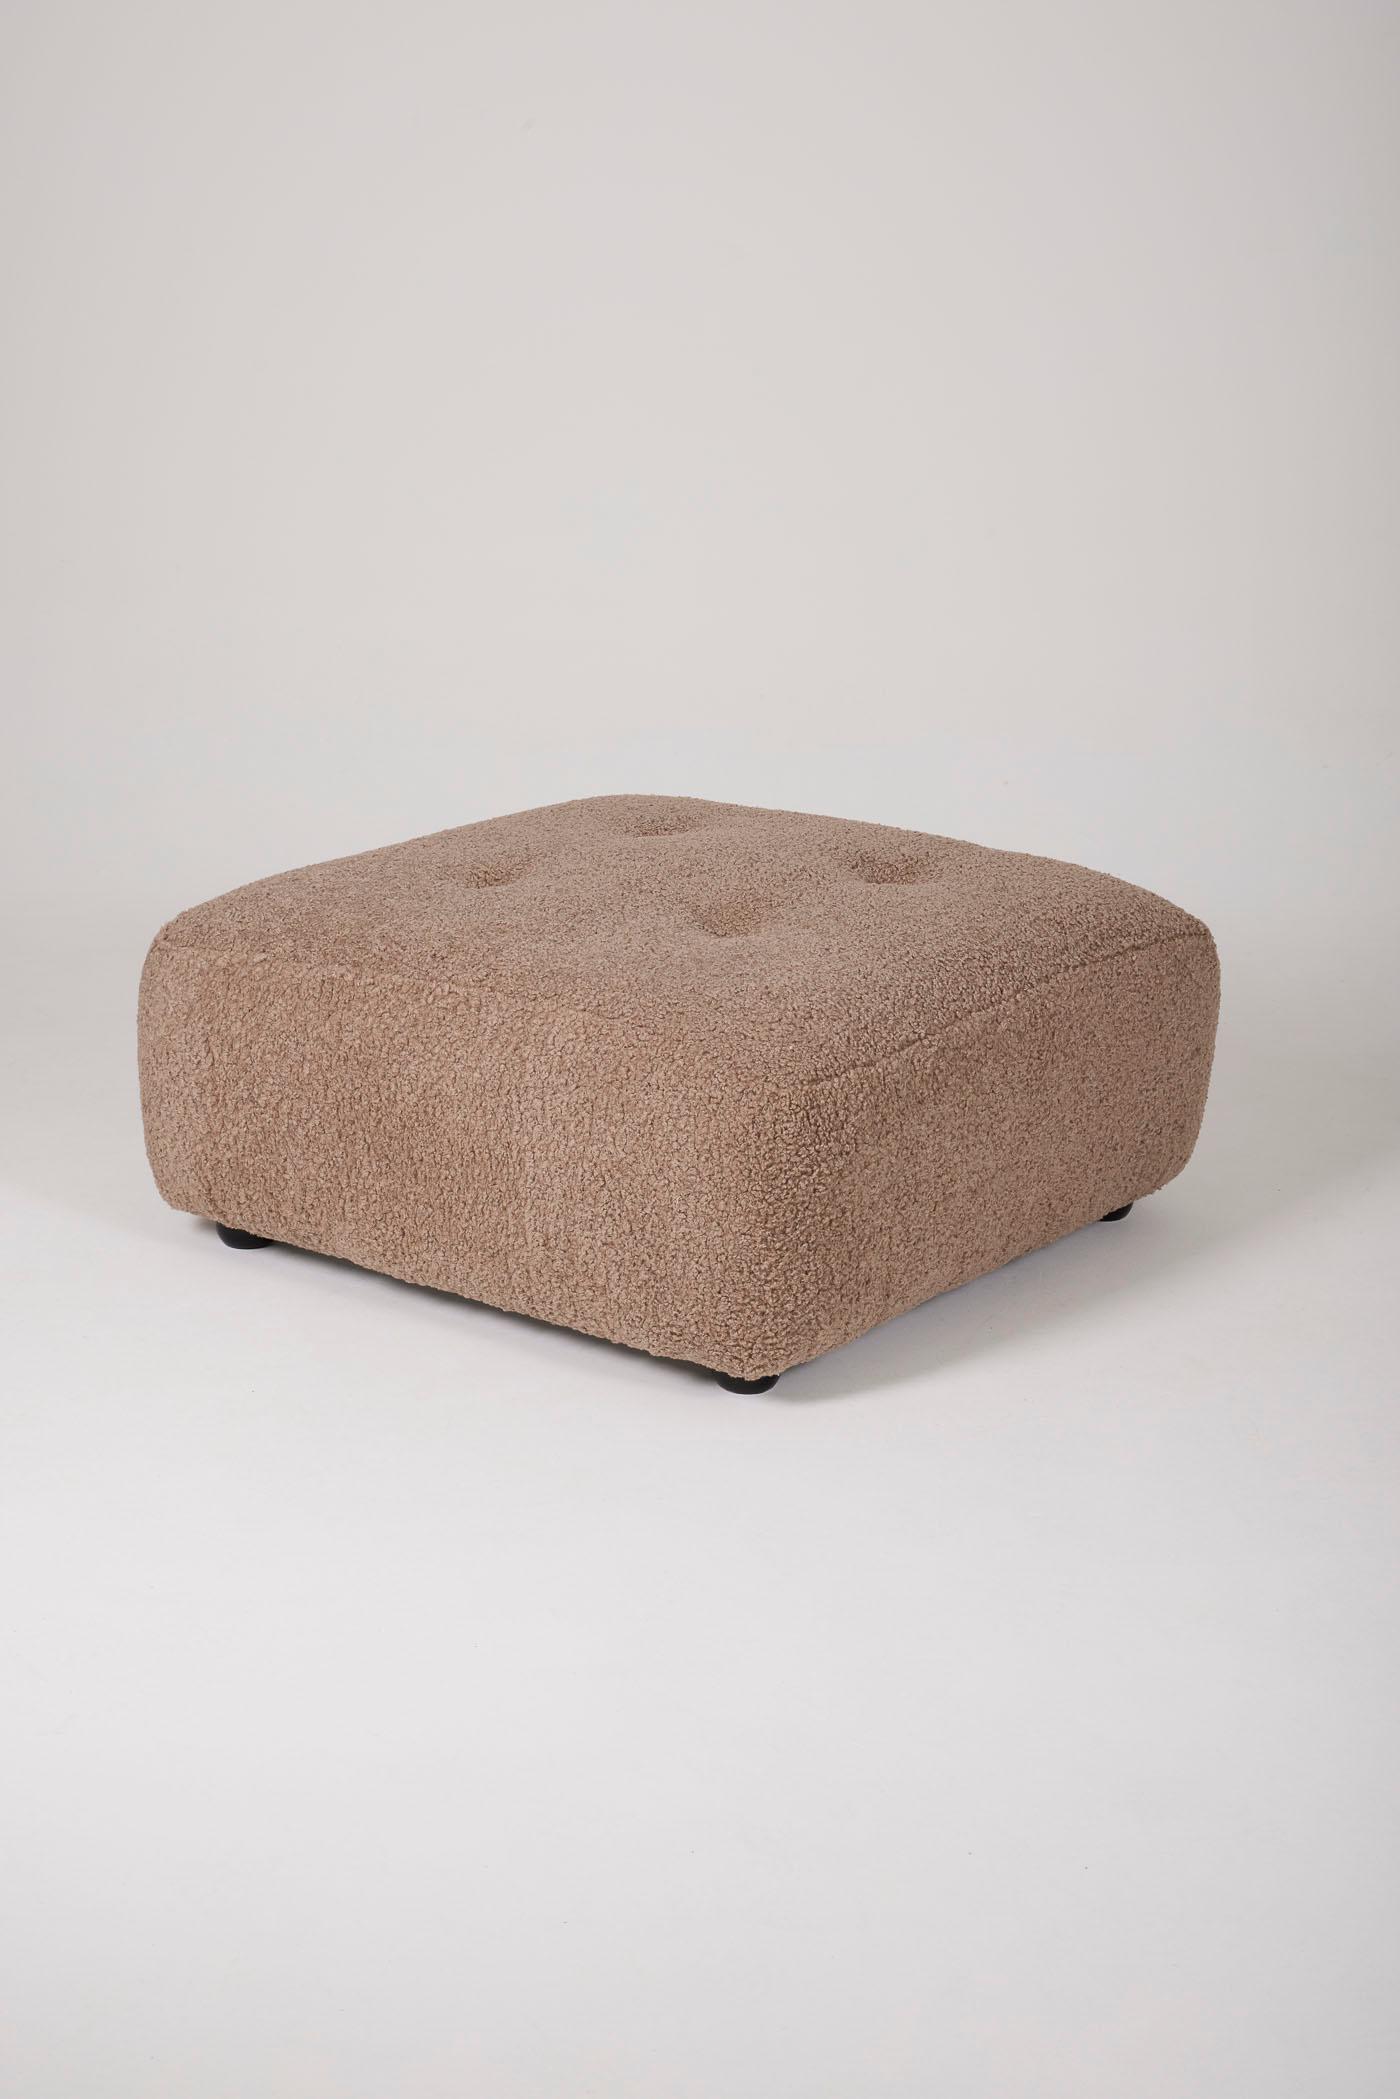 Ein gepolsterter brauner Bouclé-Beistelltisch oder eine Ottomane. Ideal als zusätzliche Sitzgelegenheit in einem Wohn- oder Schlafzimmer. In perfektem Zustand.
DV466